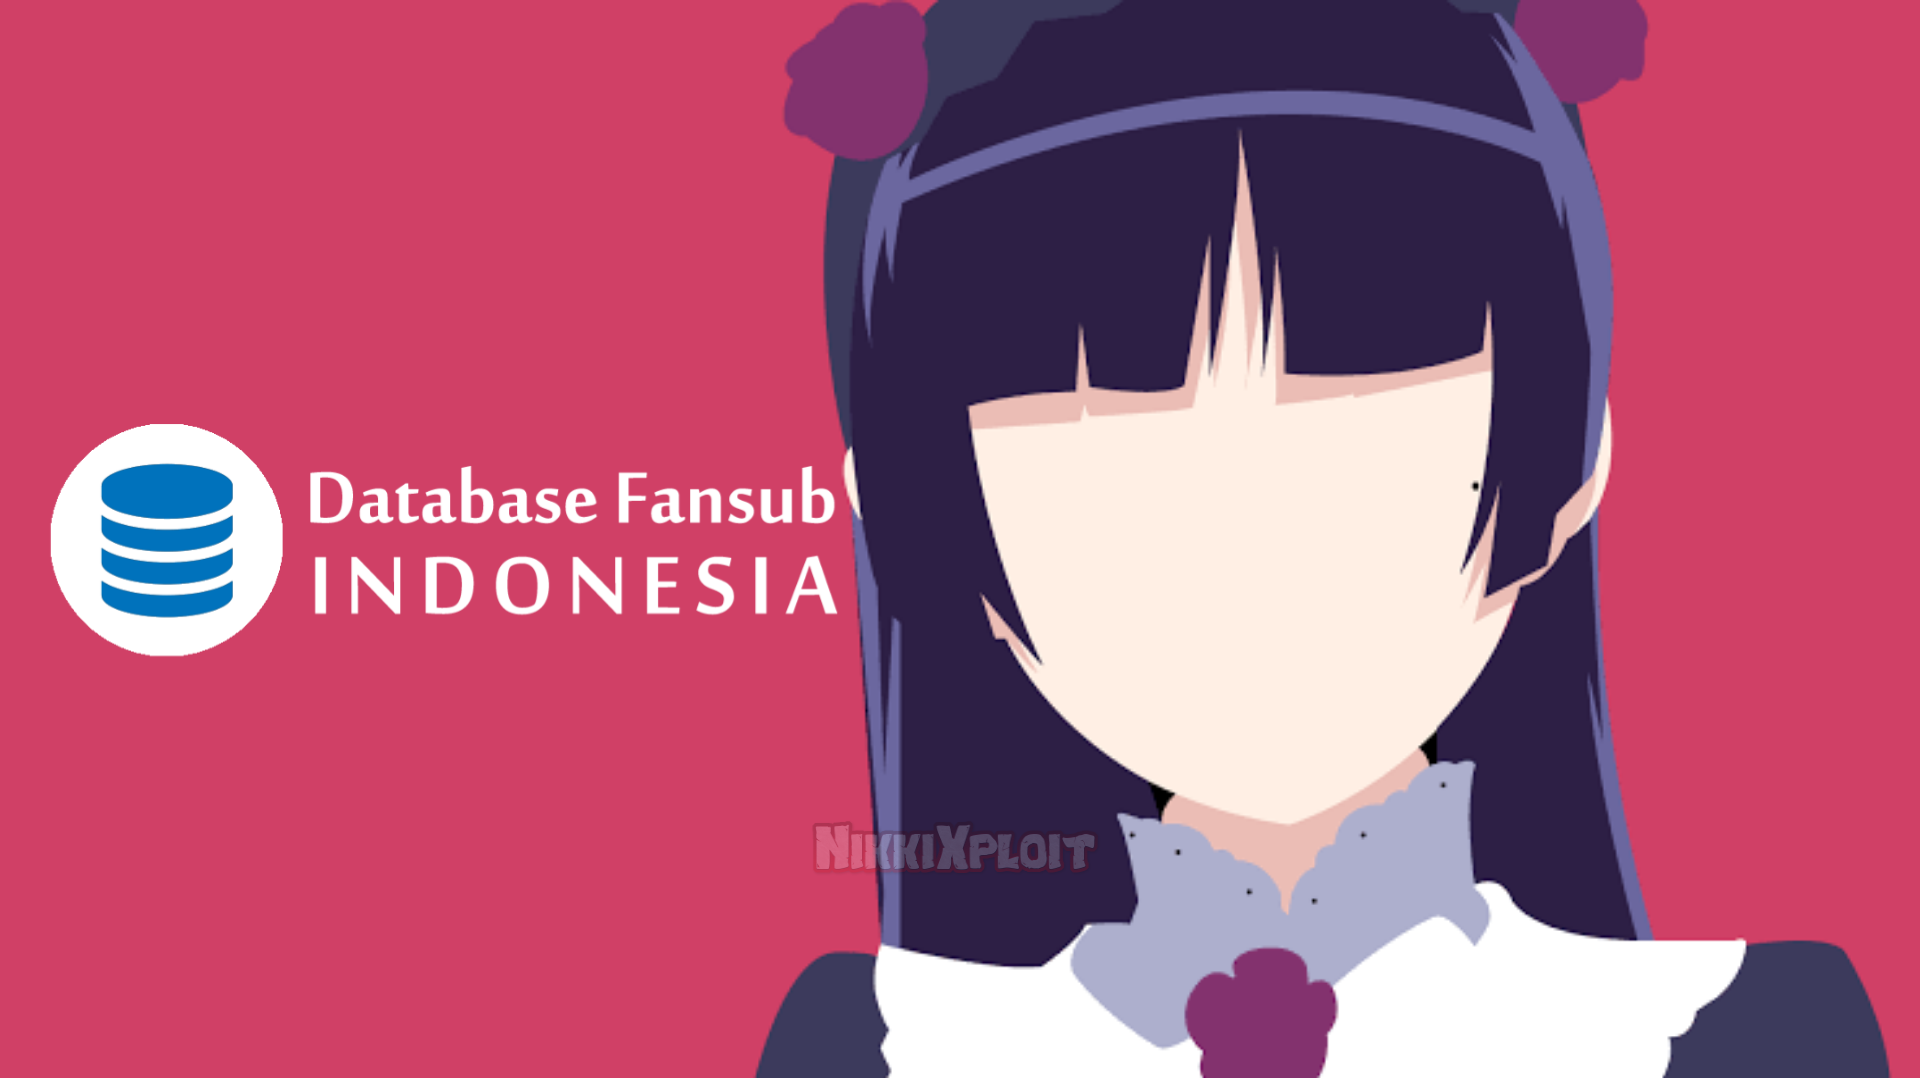 SHARE] Database Anime Fansub Indonesia - NikkiXploit